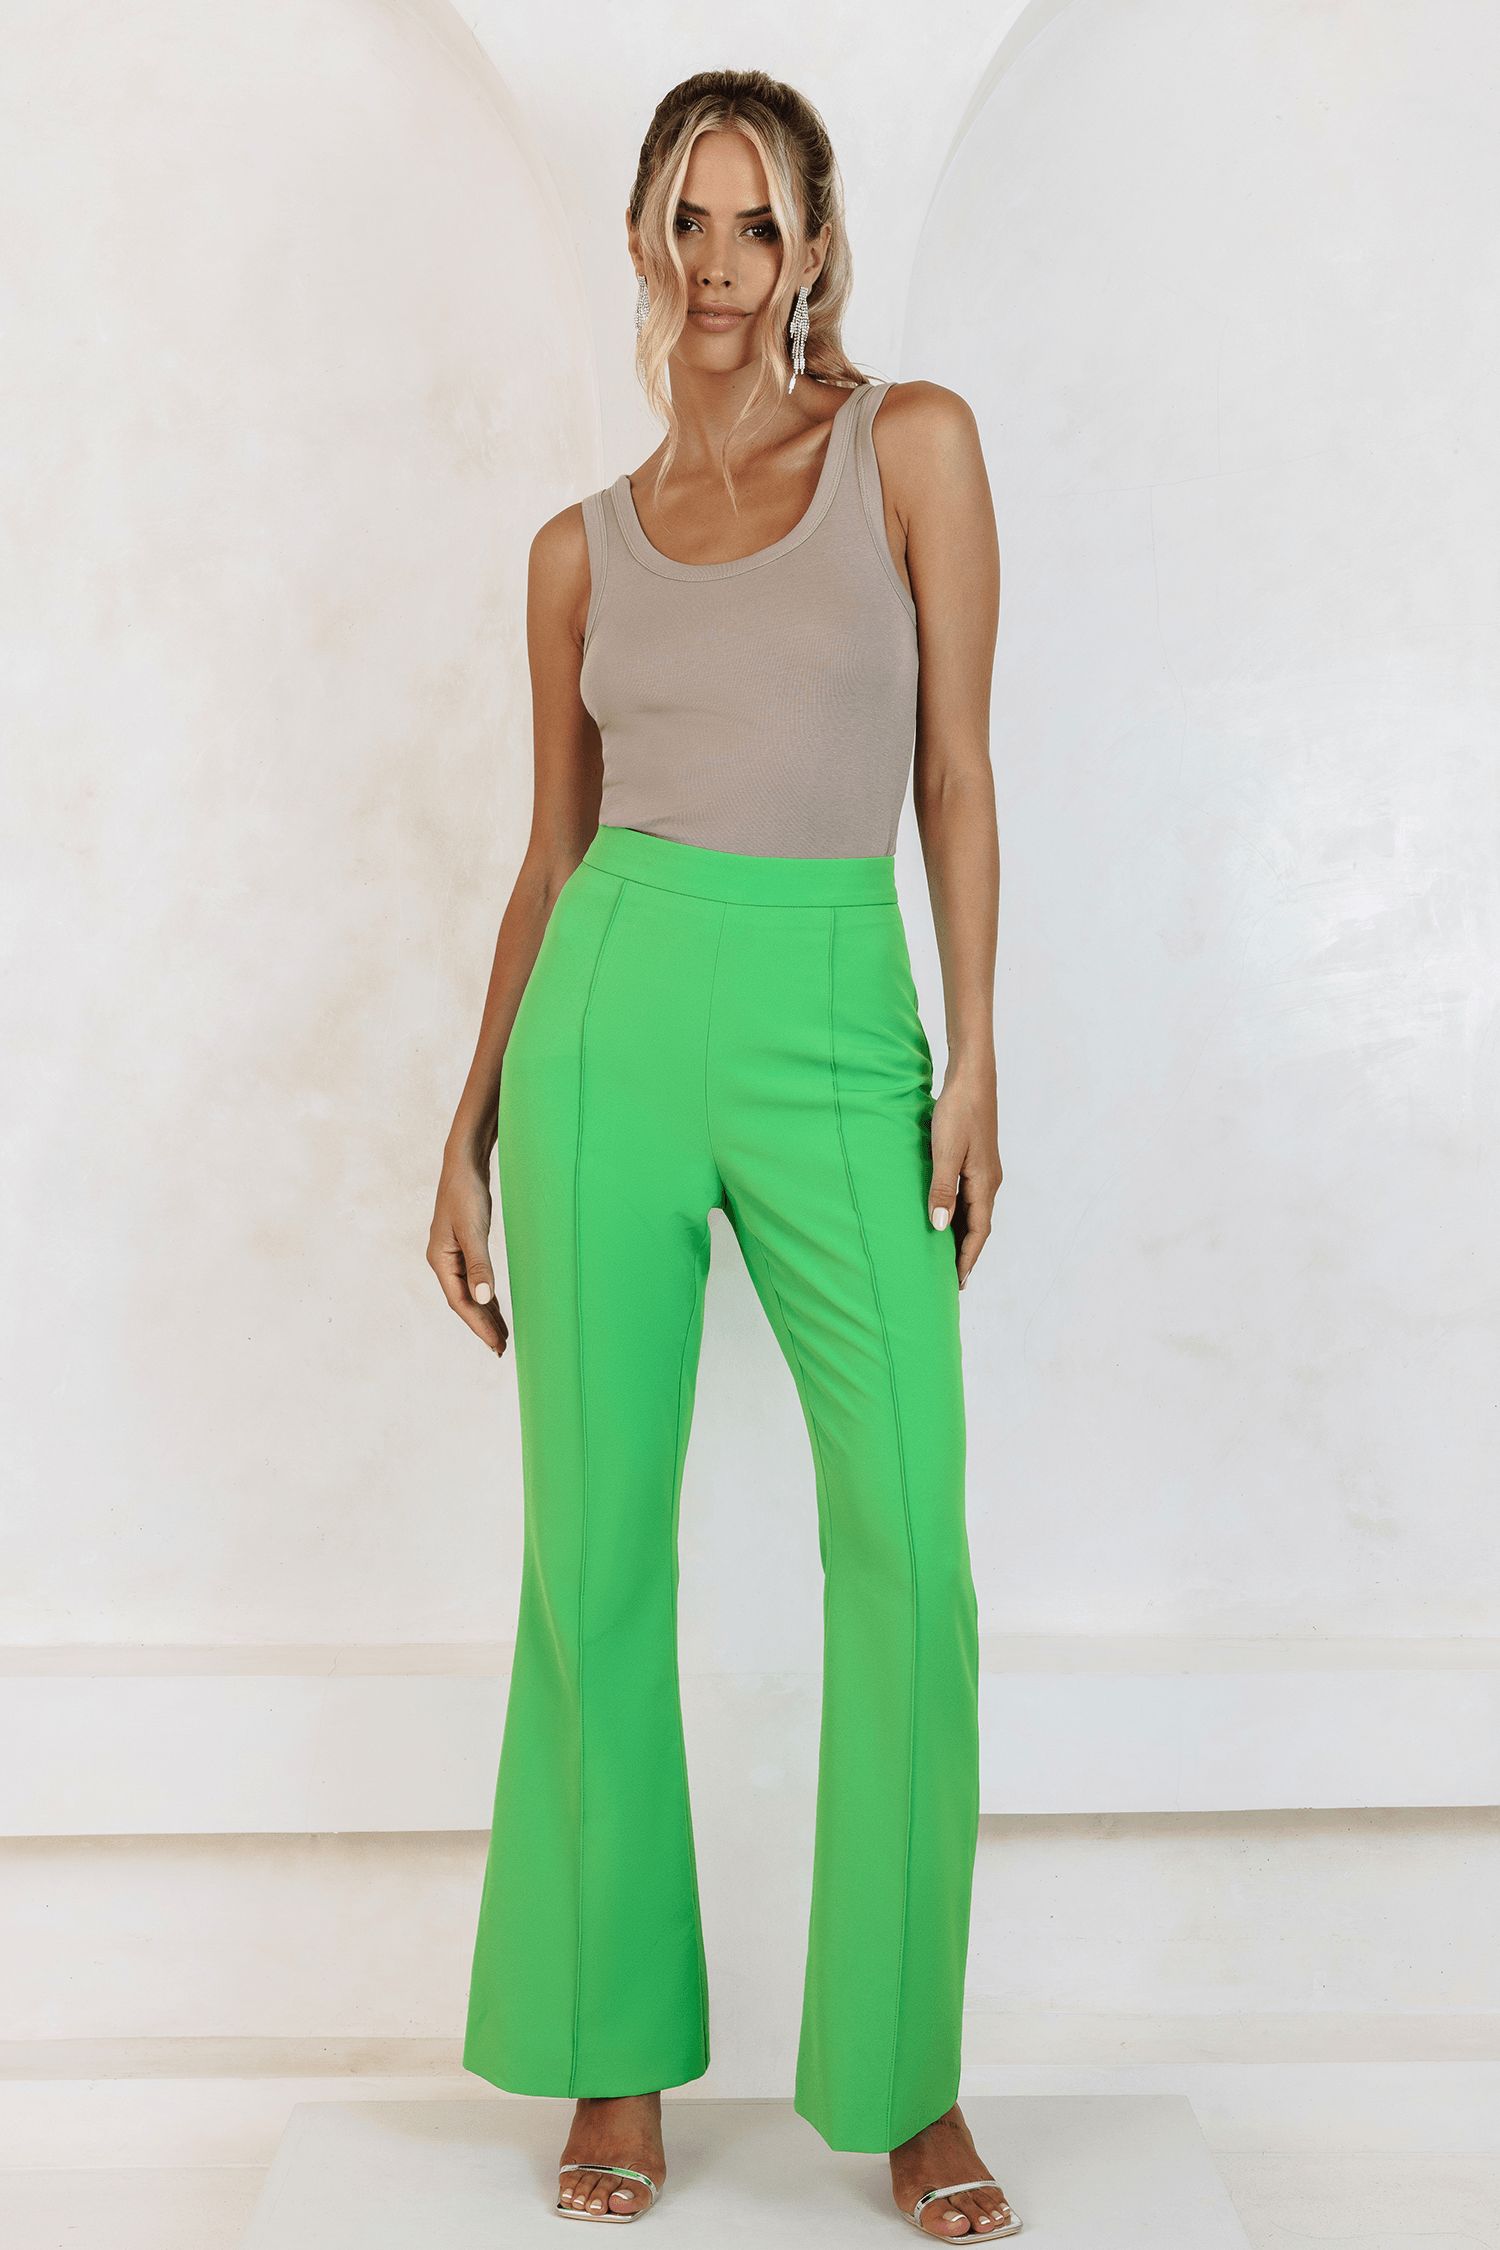 RAQUEL Fit And Flare Trouser In Apple Green - Lavish Alice